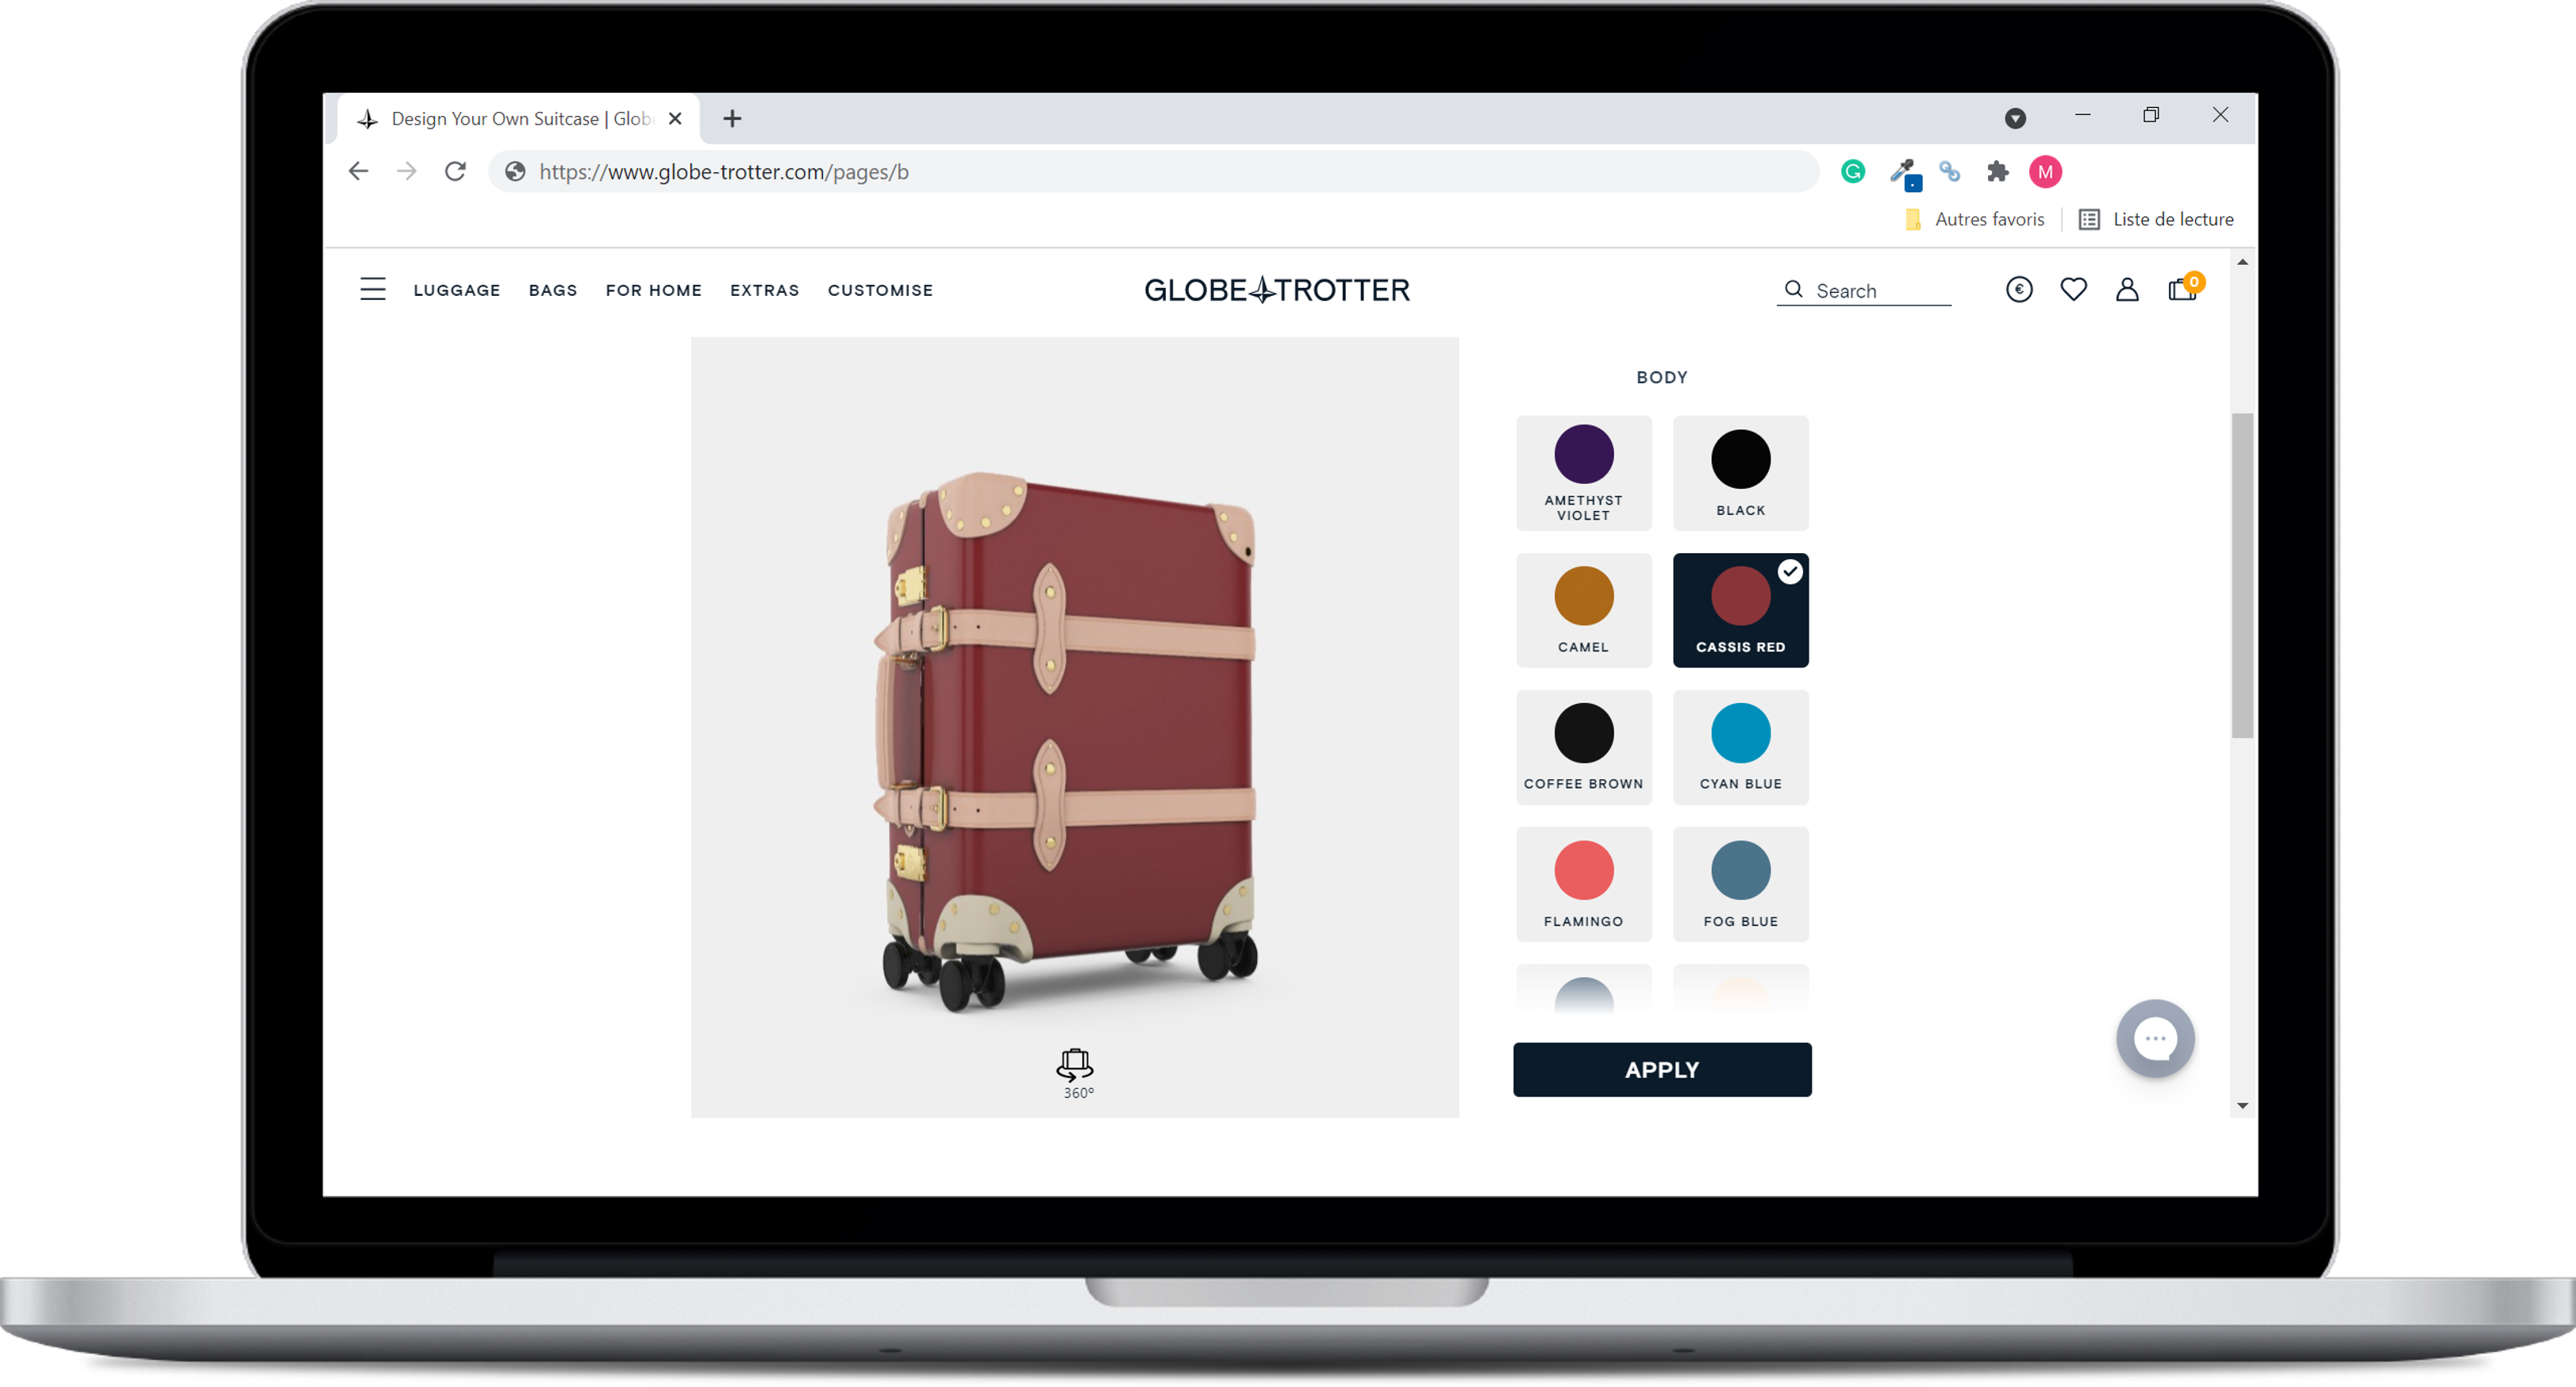 Globe trotter - скриншот конфигуратора продуктов на их сайте 